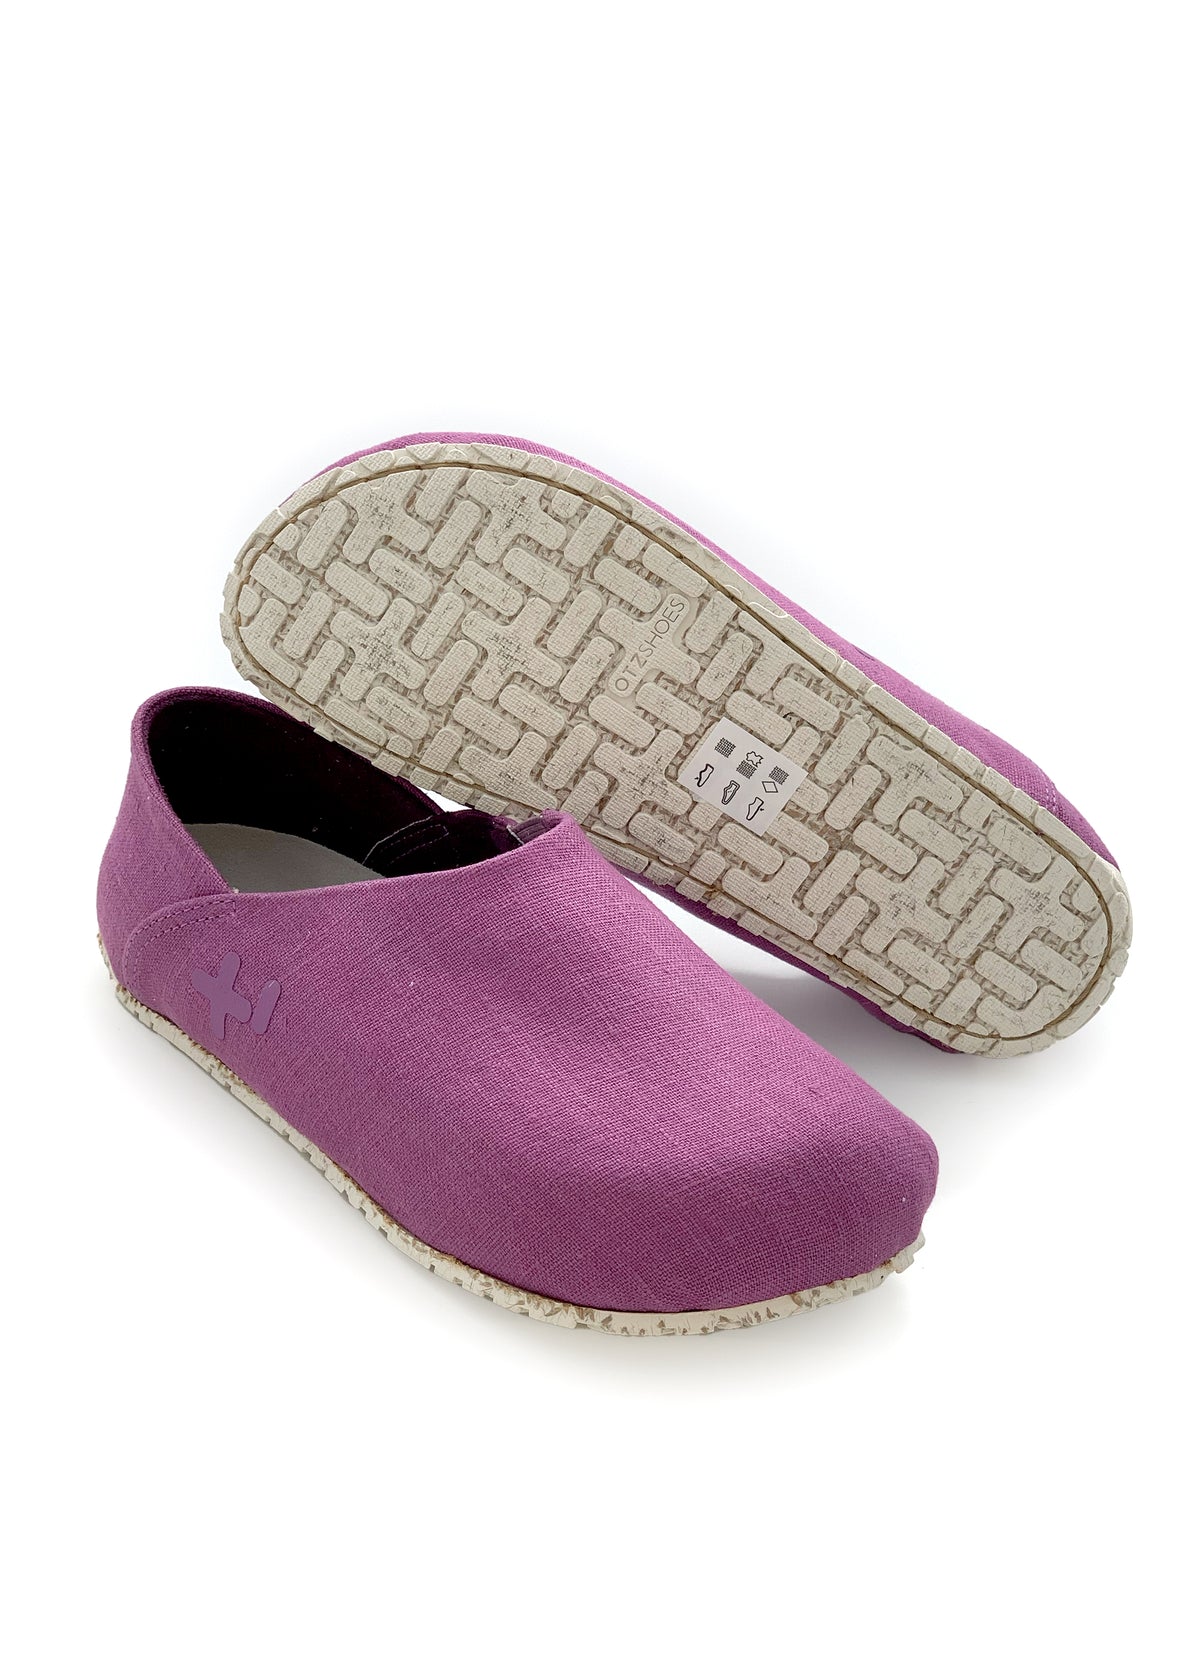 OTZ shoes - purple linen fabric